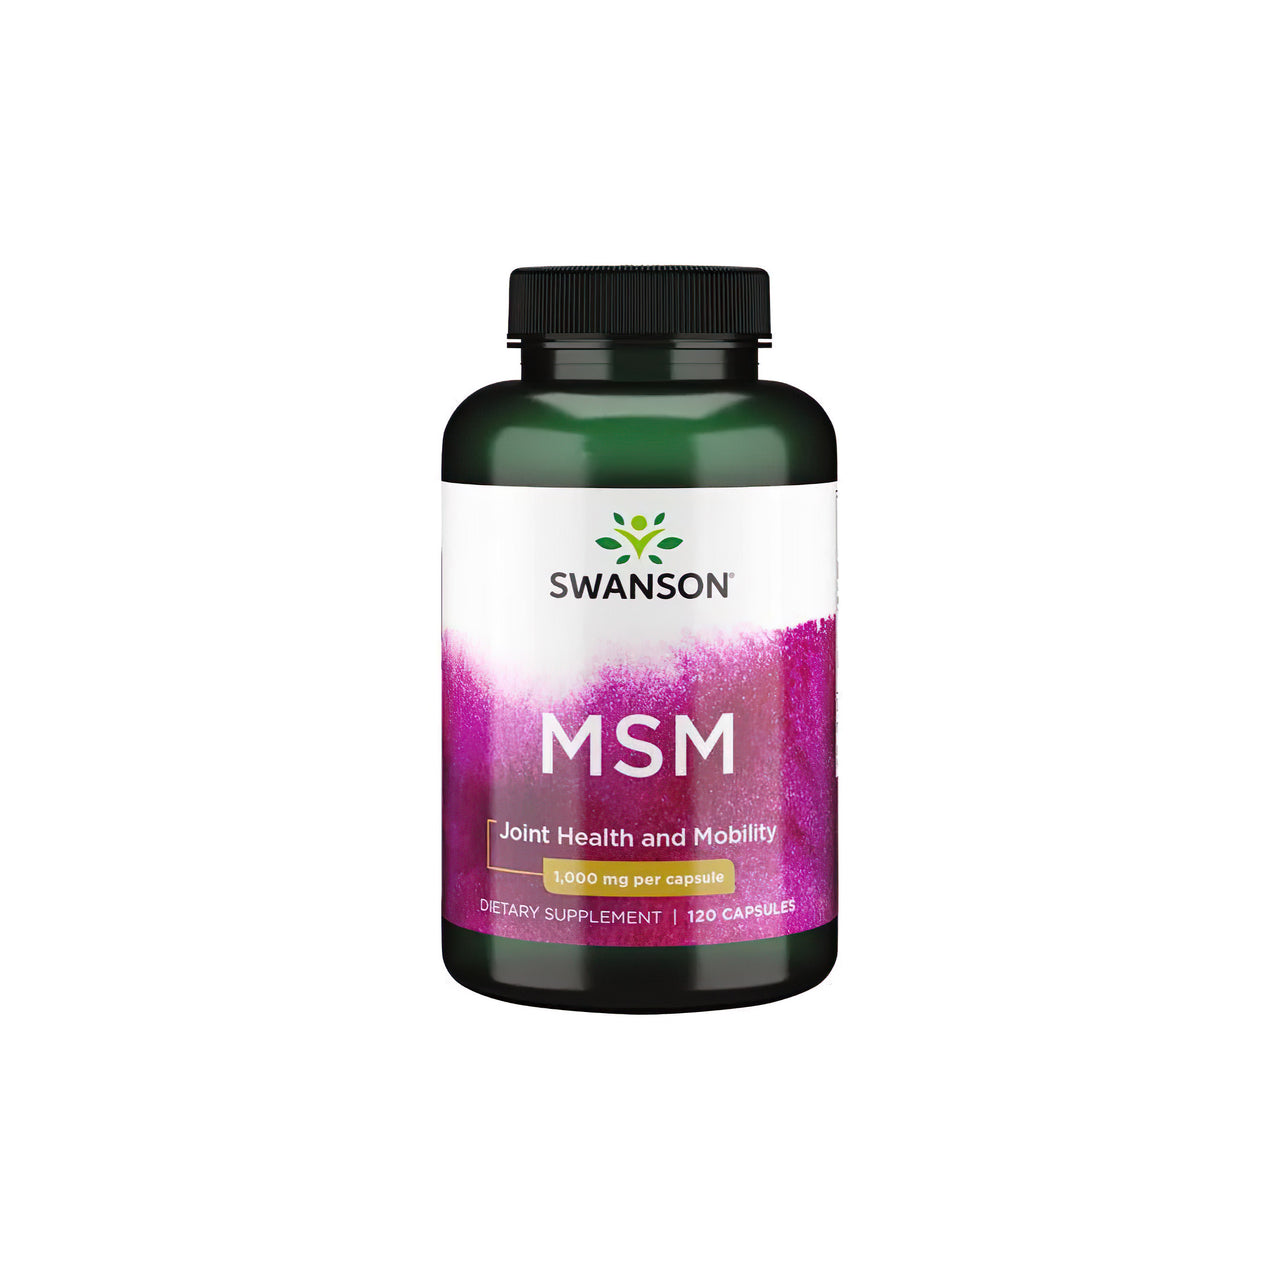 Un frasco de Swanson MSM 1000 mg 120 cáps., formulado específicamente para la salud de las articulaciones y los tejidos conjuntivos, expuesto sobre un limpio fondo blanco.